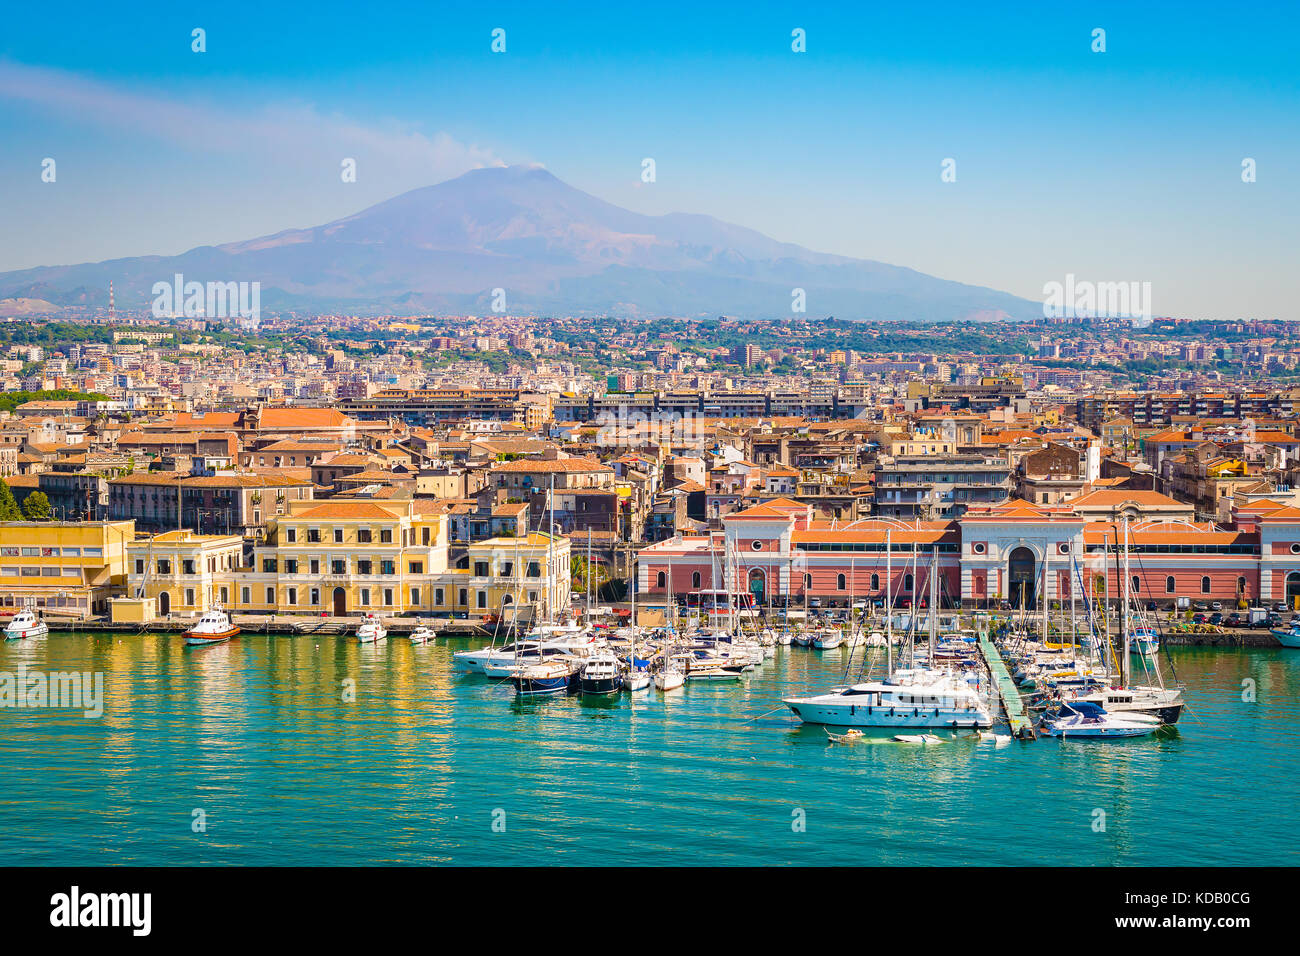 Cityscape and harbor of Catania, Sicily, Italy Stock Photo